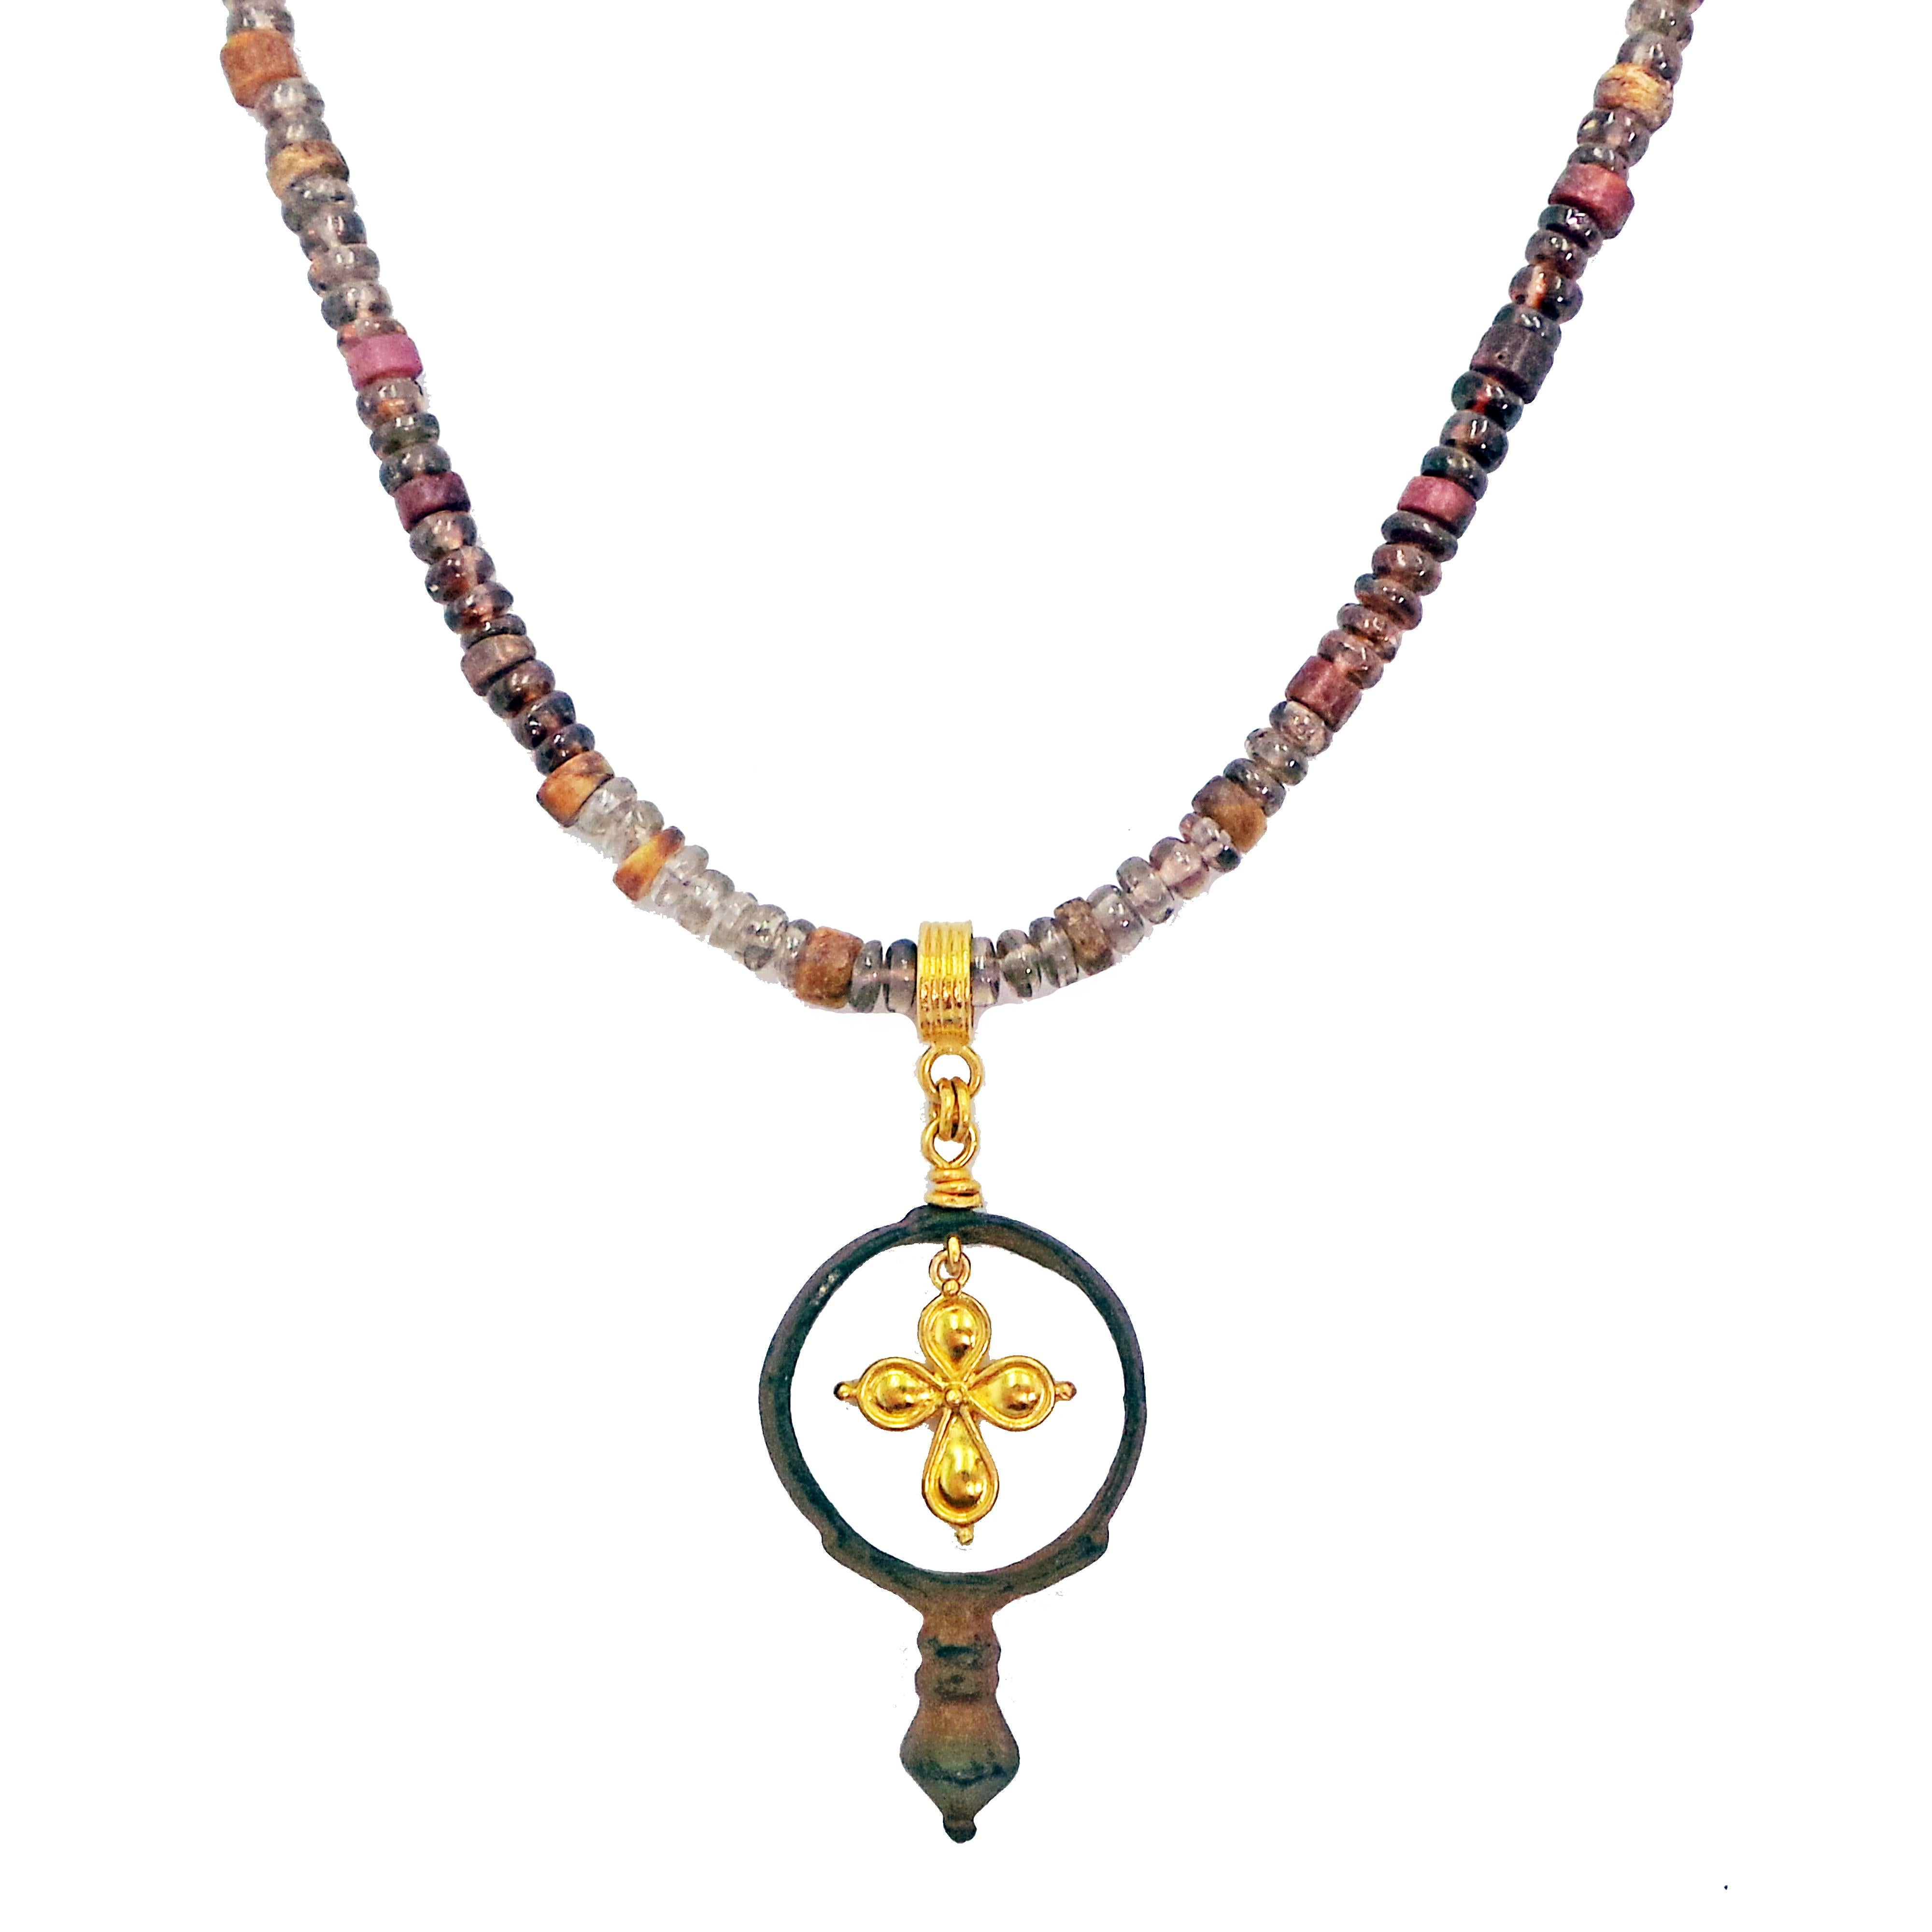 Authentique anneau romain antique en bronze et pendentif en forme de croix en or jaune 22k sur un collier en perles de spinelles et de coquilles d'huîtres épineuses de couleur rouge, violette et brune. Le collier est terminé par une fermeture à